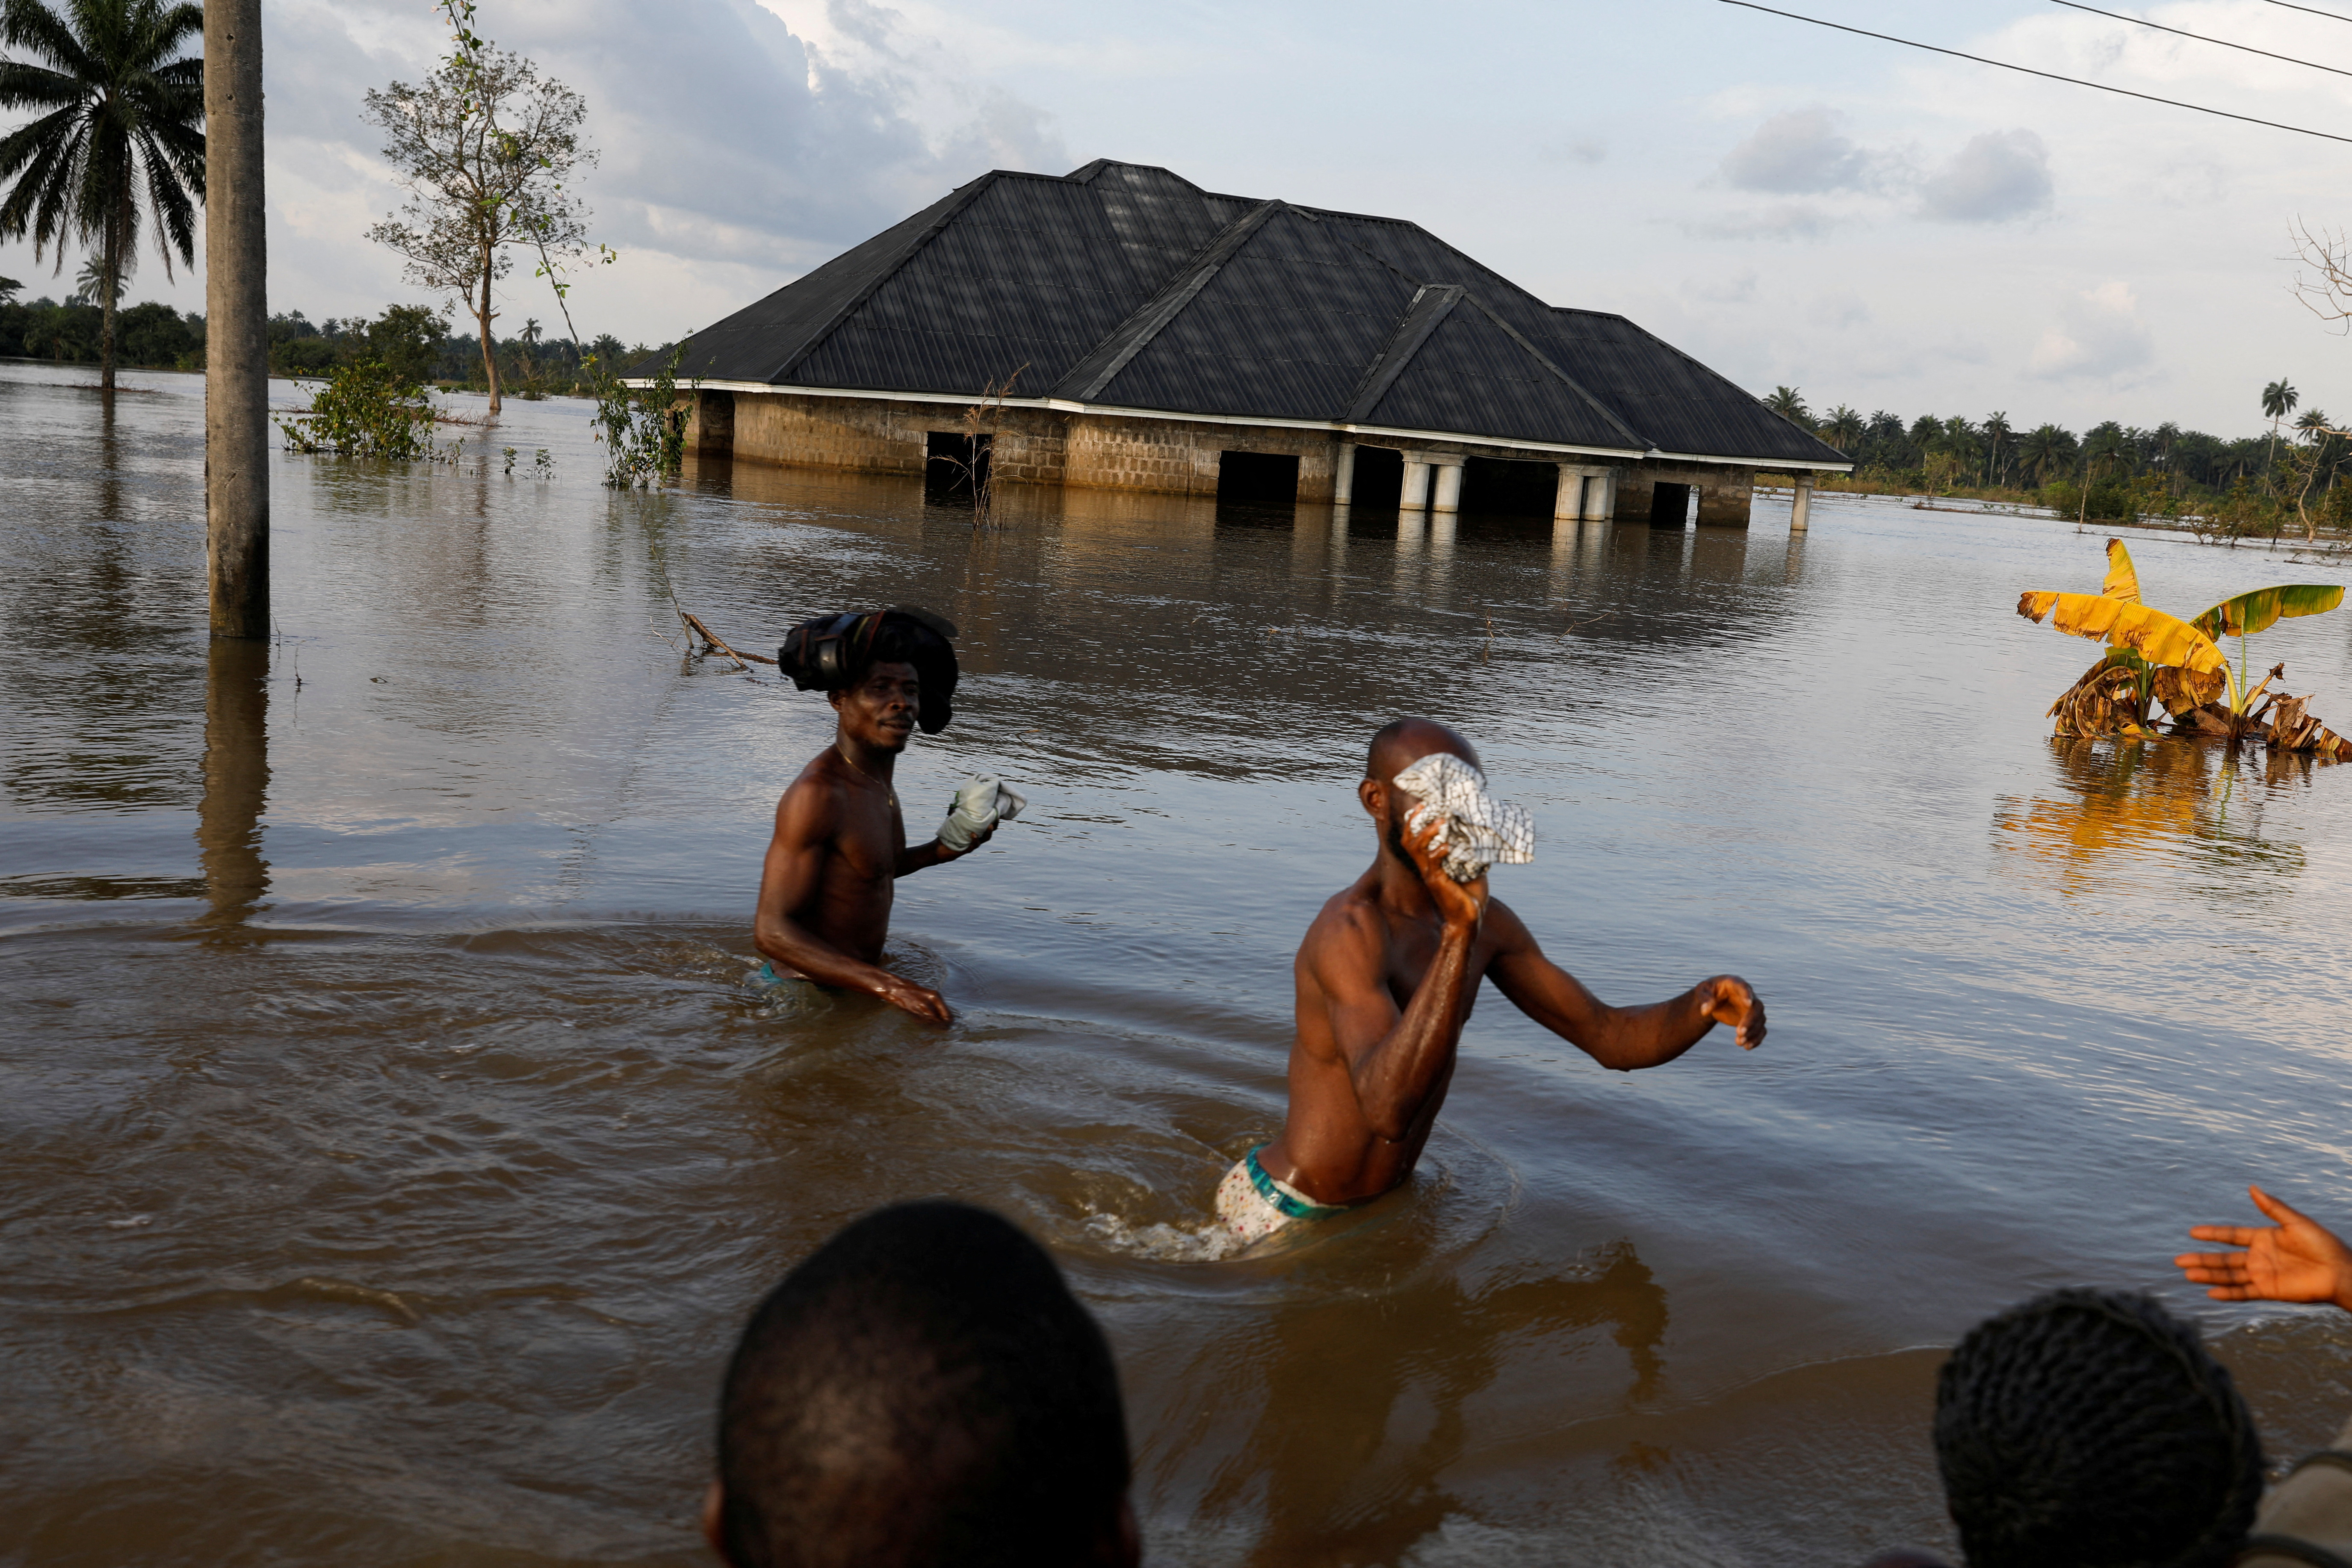 Los residentes atraviesan el agua después de una inundación masiva en la comunidad de Obagi, estado de Rivers, Nigeria, 22 de octubre de 2022. (REUTERS/Temilade Adelaja)